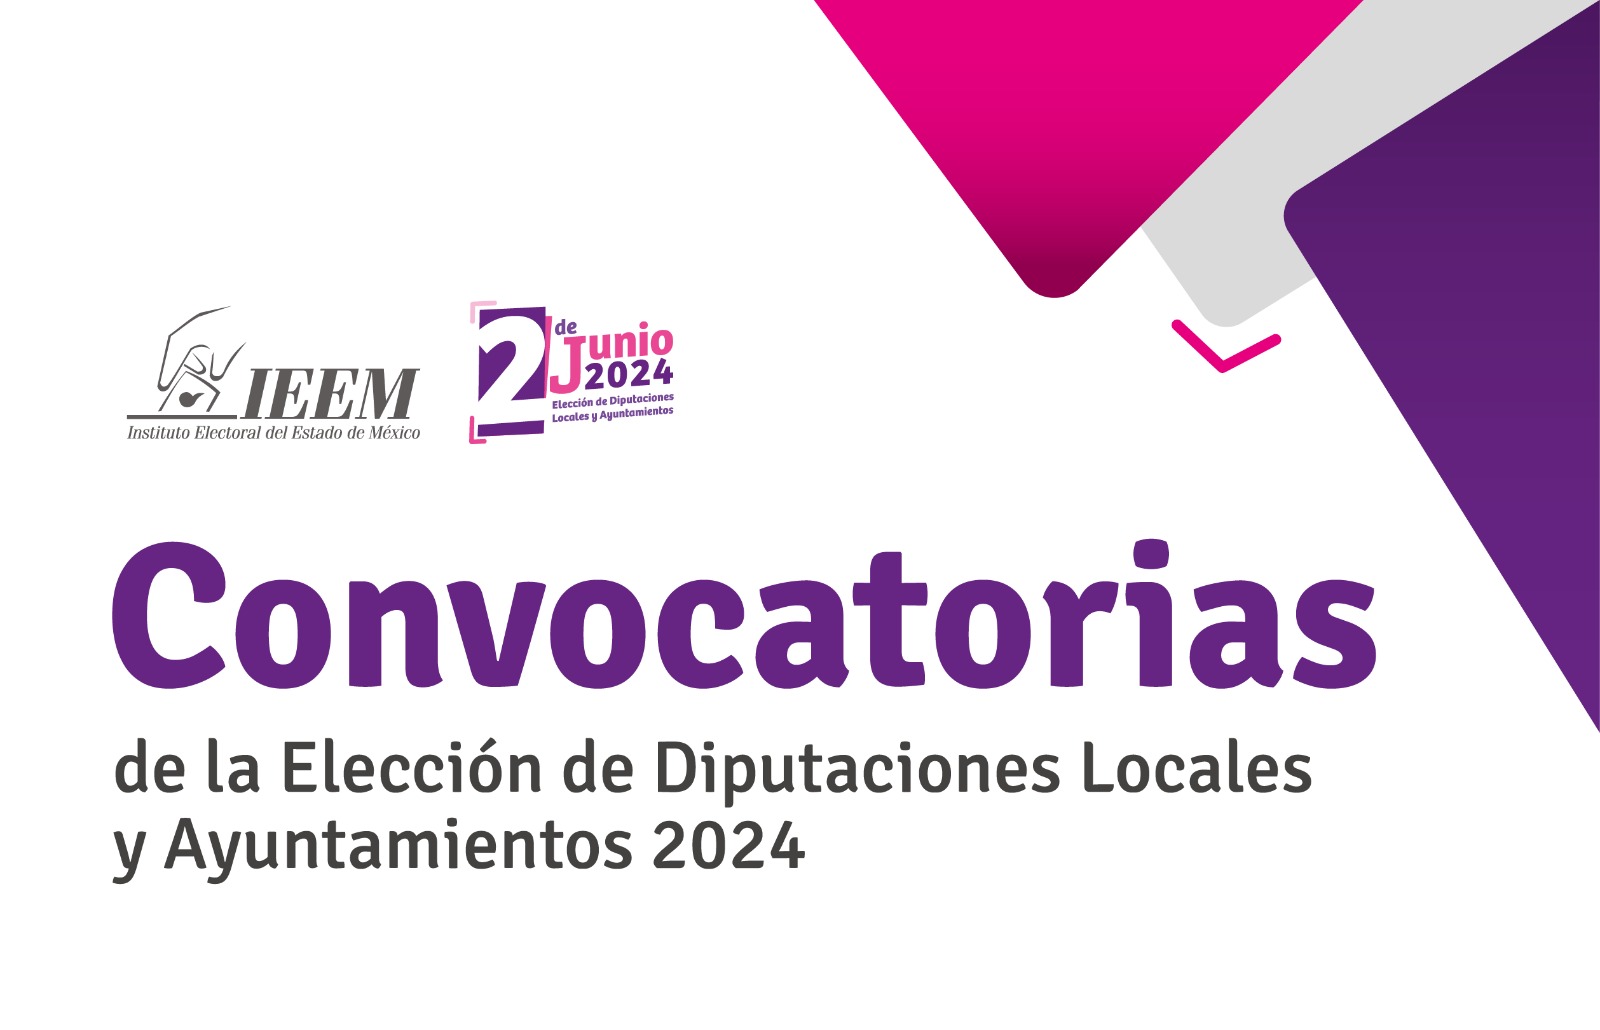 Convocatorias de la Elección de Diputaciones Locales y Ayuntamientos 2024